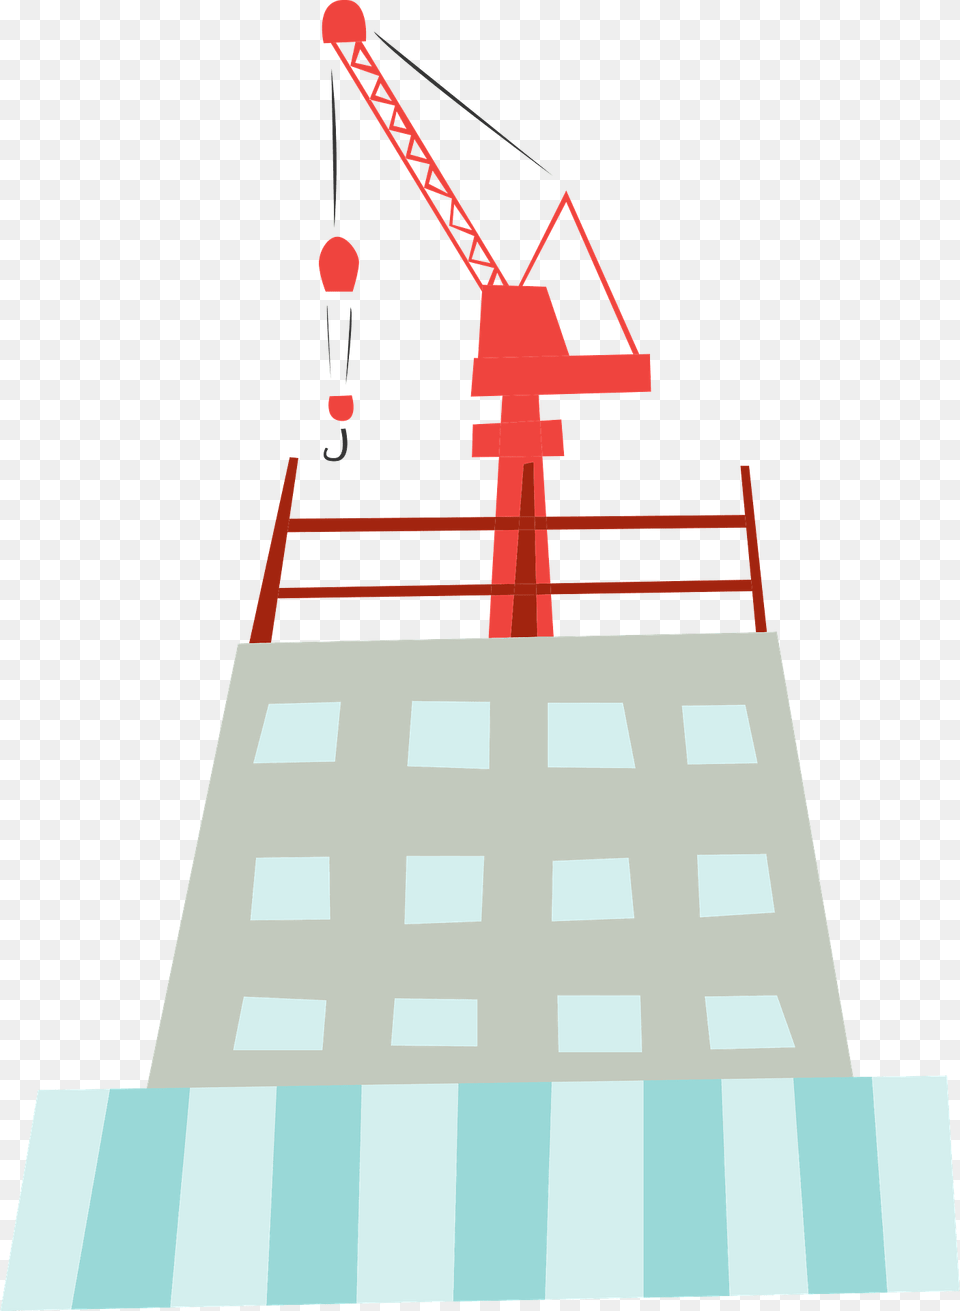 Building Under Construction Clipart, Construction Crane, City Free Transparent Png